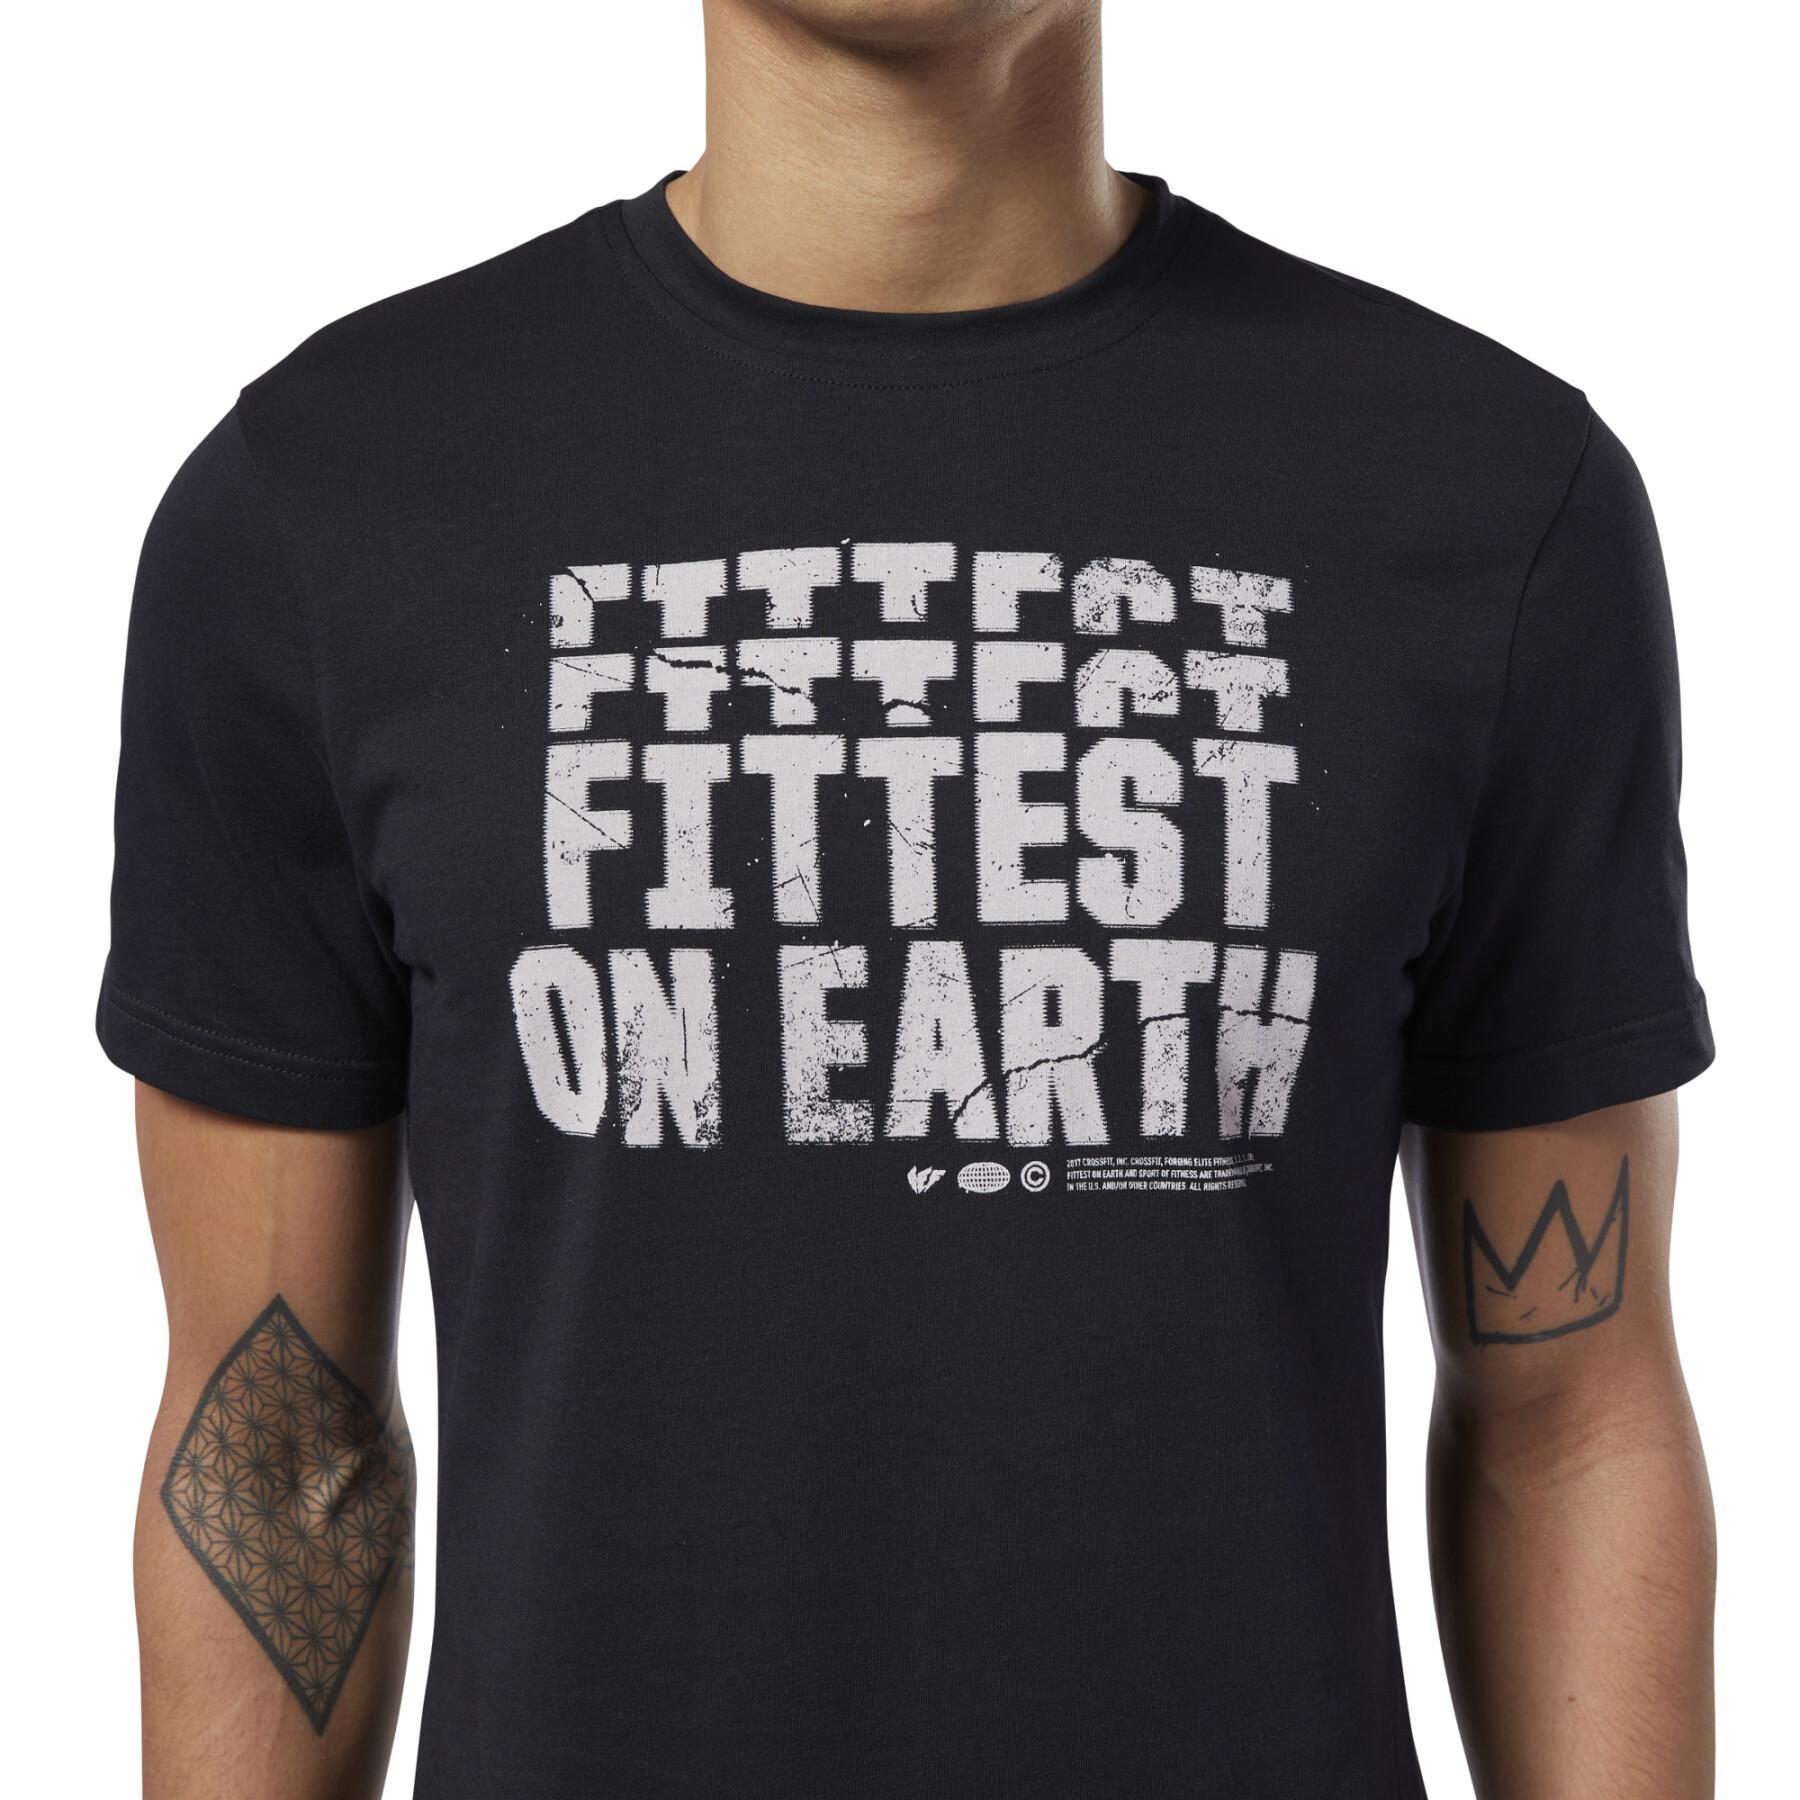 Camiseta Reebok Fittest On Earth